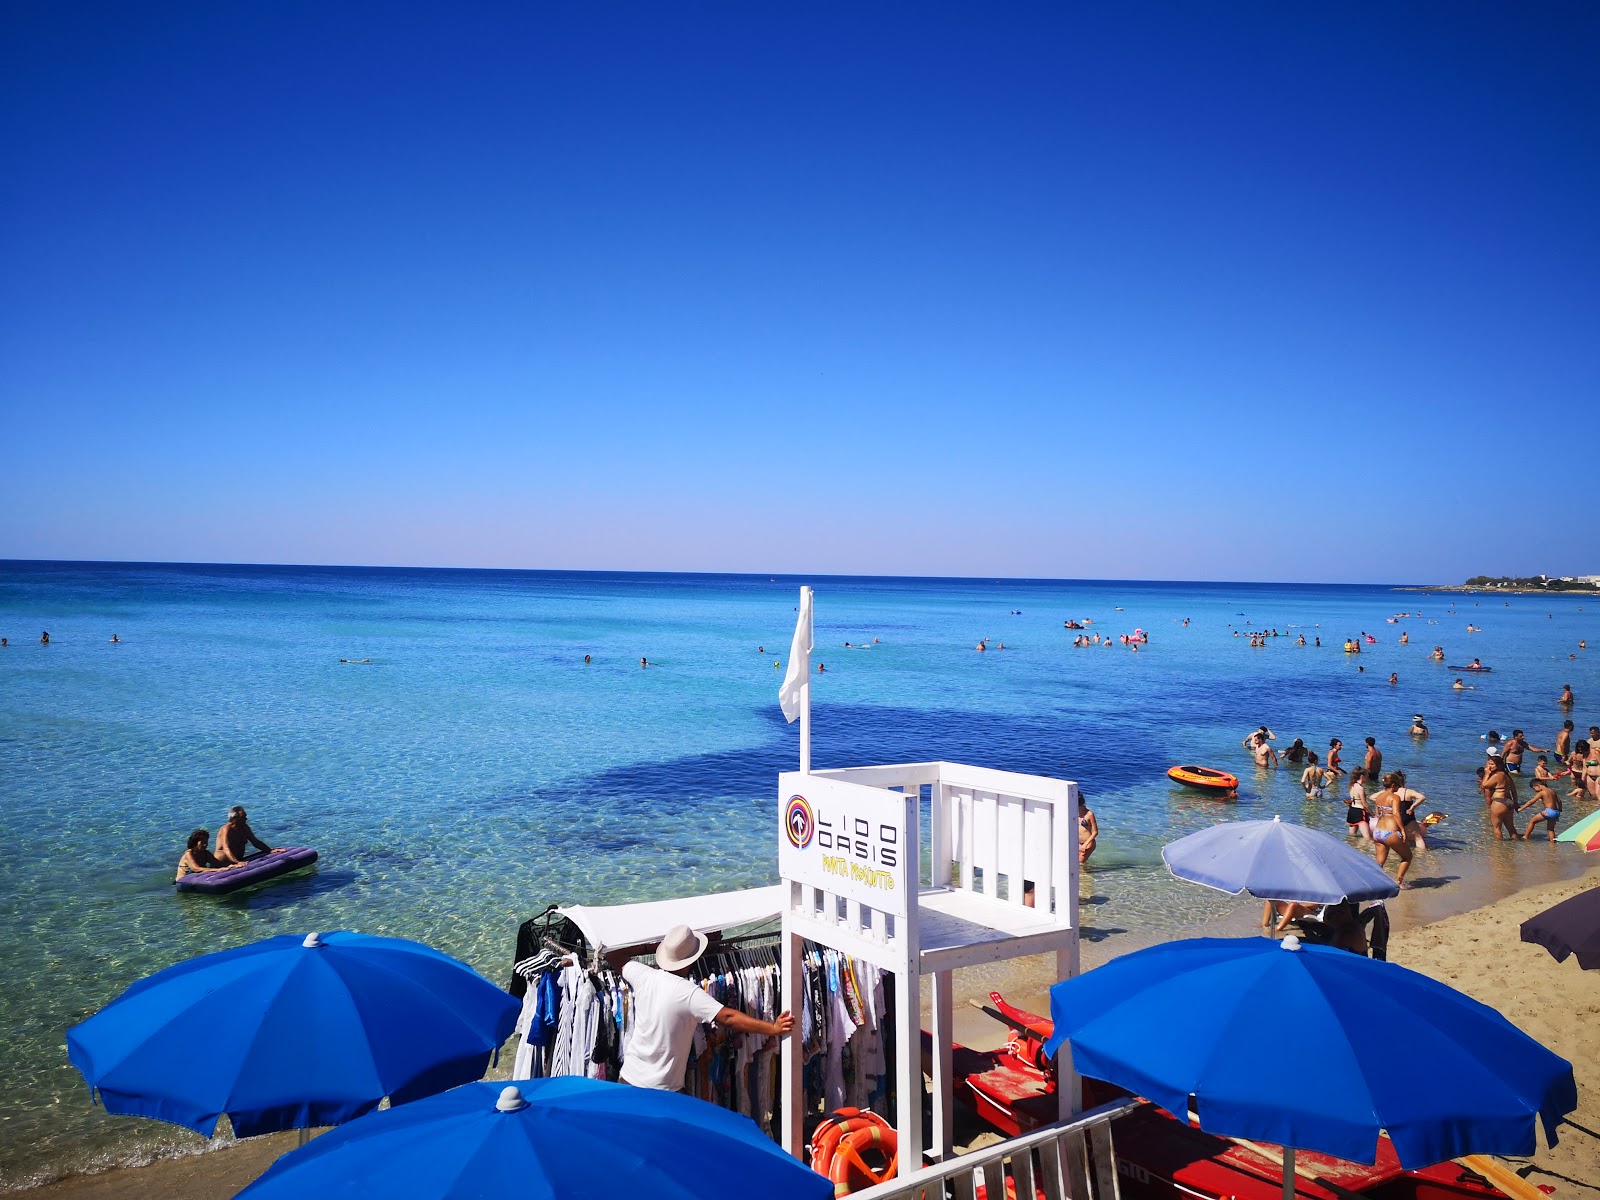 Spiaggia di Punta Prosciutto'in fotoğrafı - rahatlamayı sevenler arasında popüler bir yer